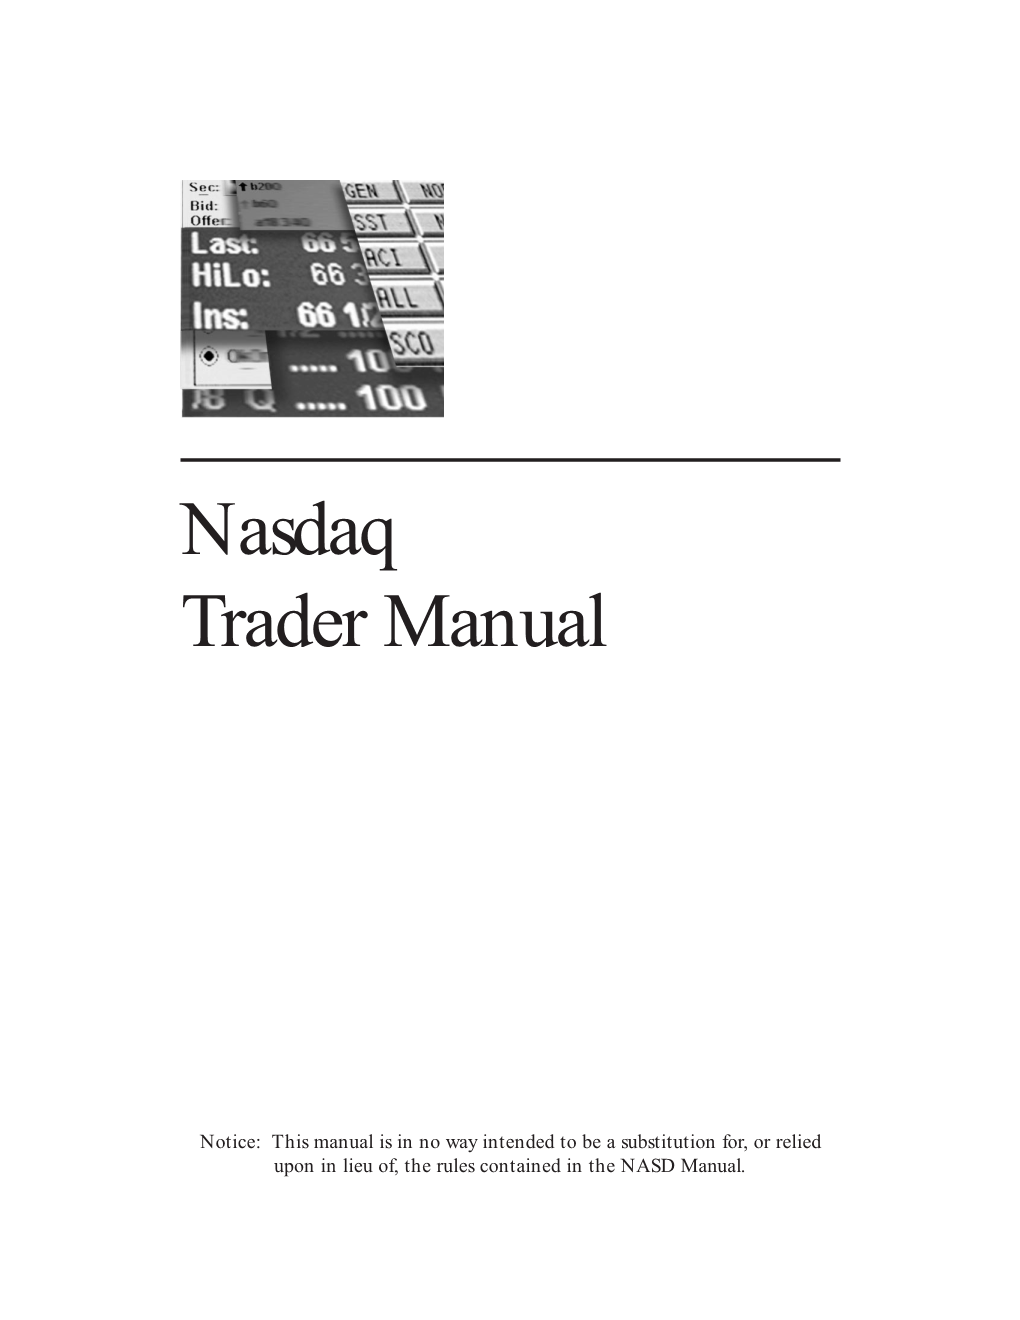 Nasdaq Trader Manual